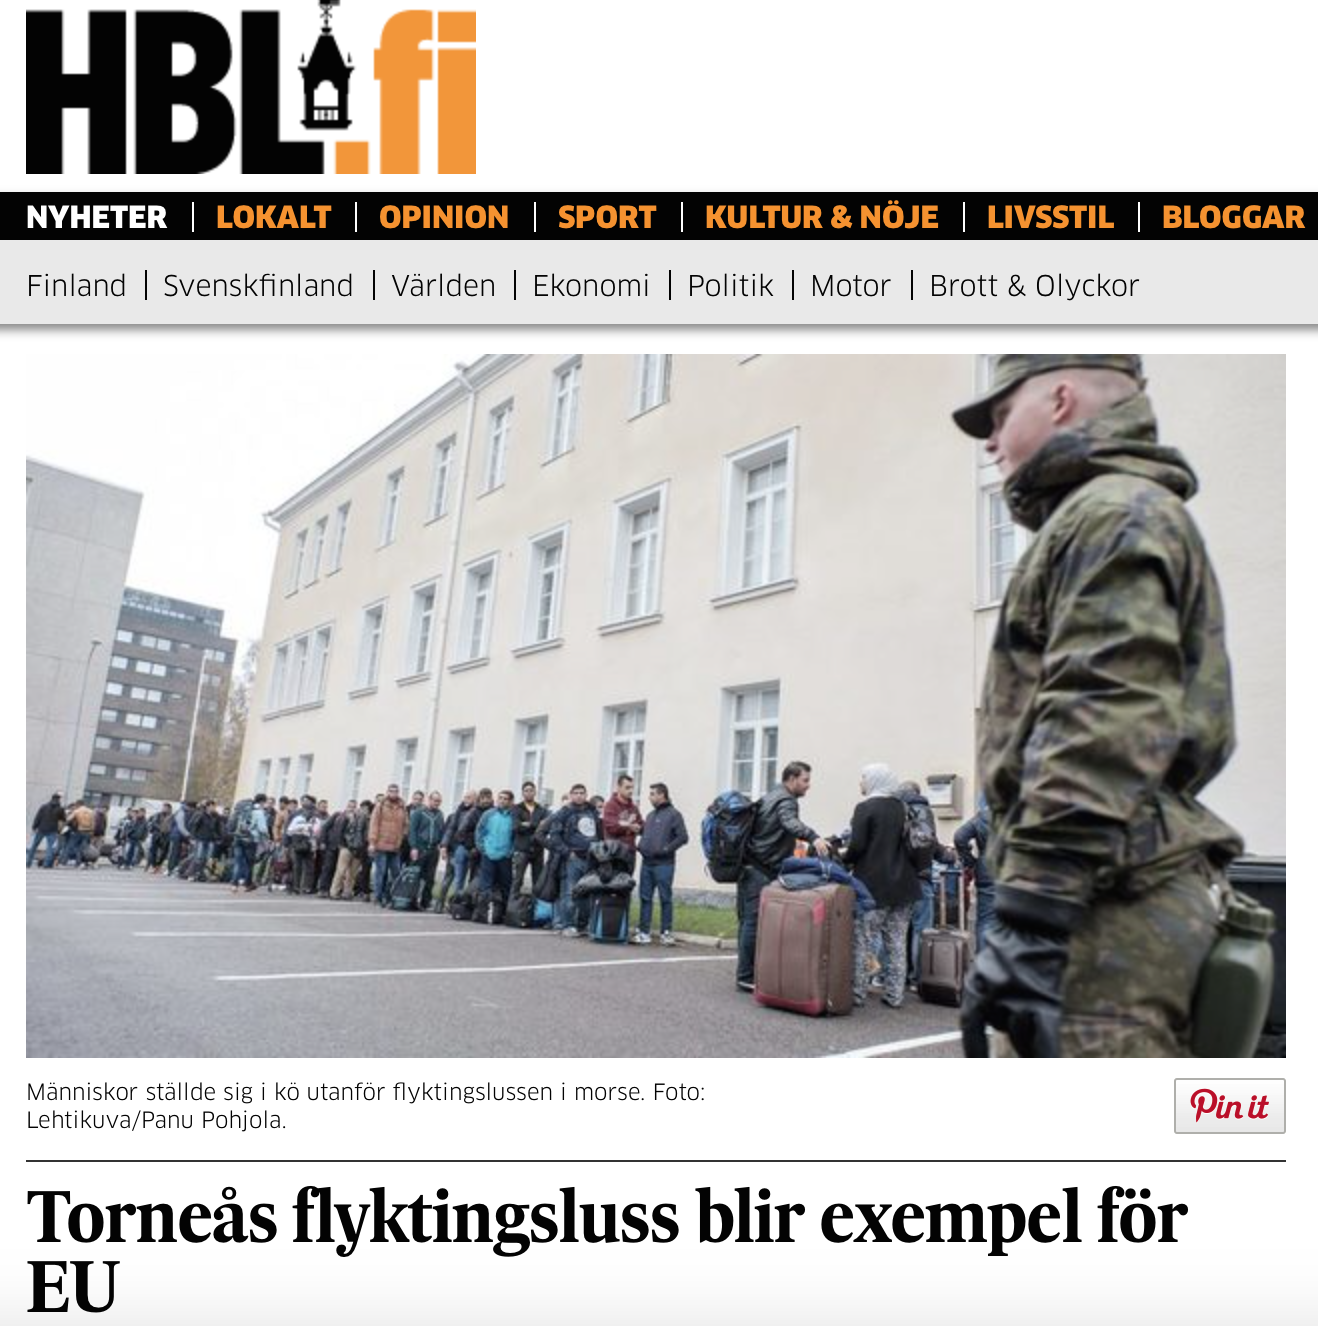 Finland. Flyktingslussen i Torneå blir exempel för andra EU-länder.